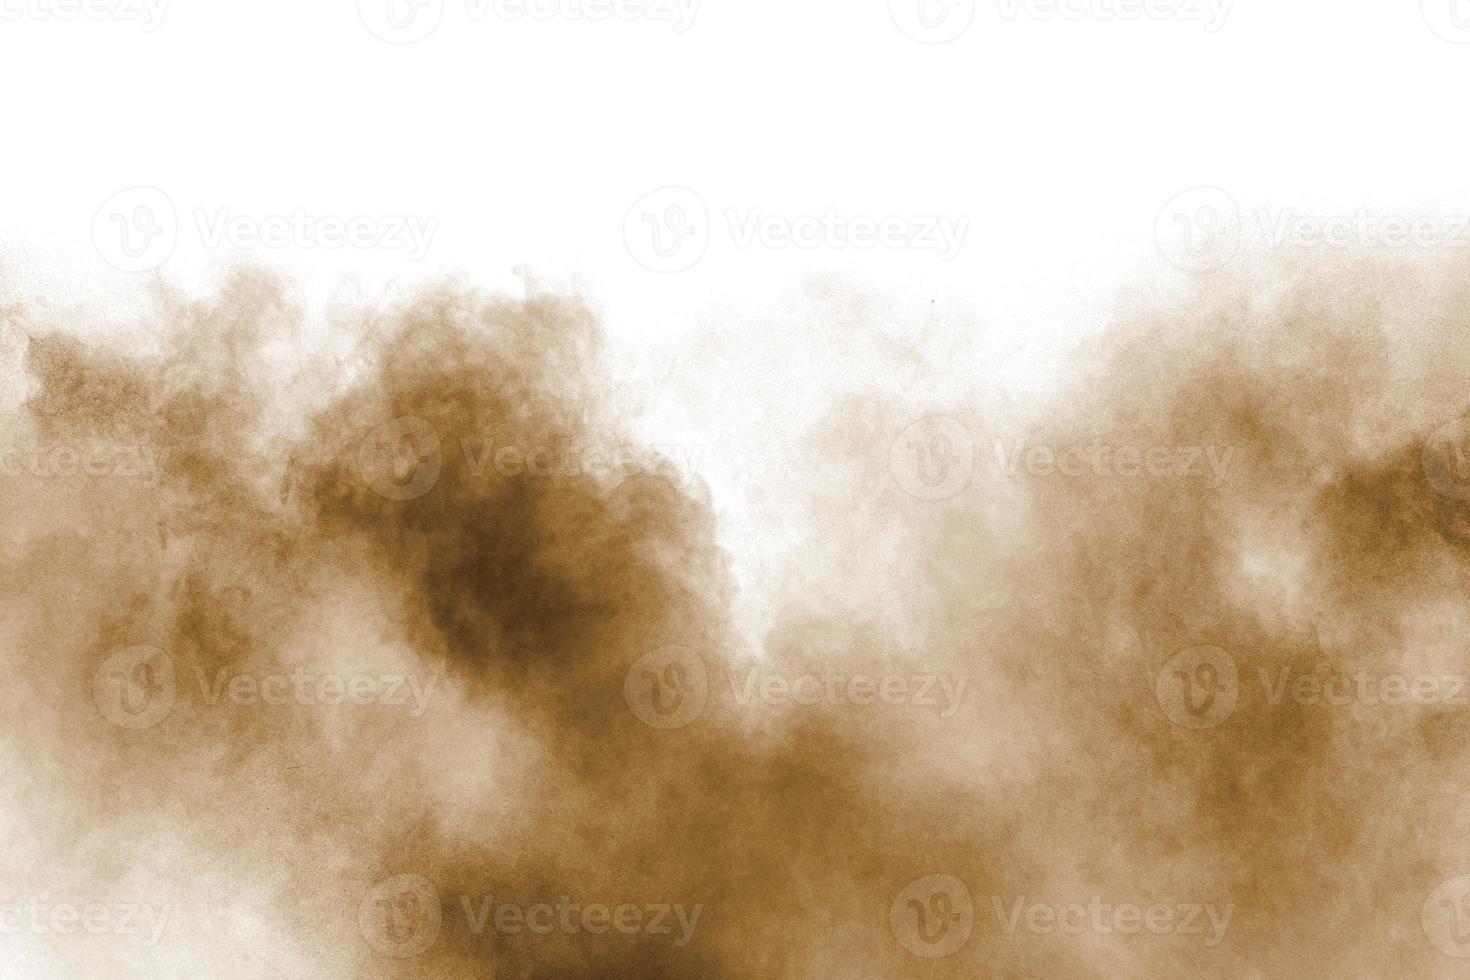 bevriezen beweging van bruine stofexplosie. het stoppen van de beweging van bruin poeder. explosief bruin poeder op een witte achtergrond. foto